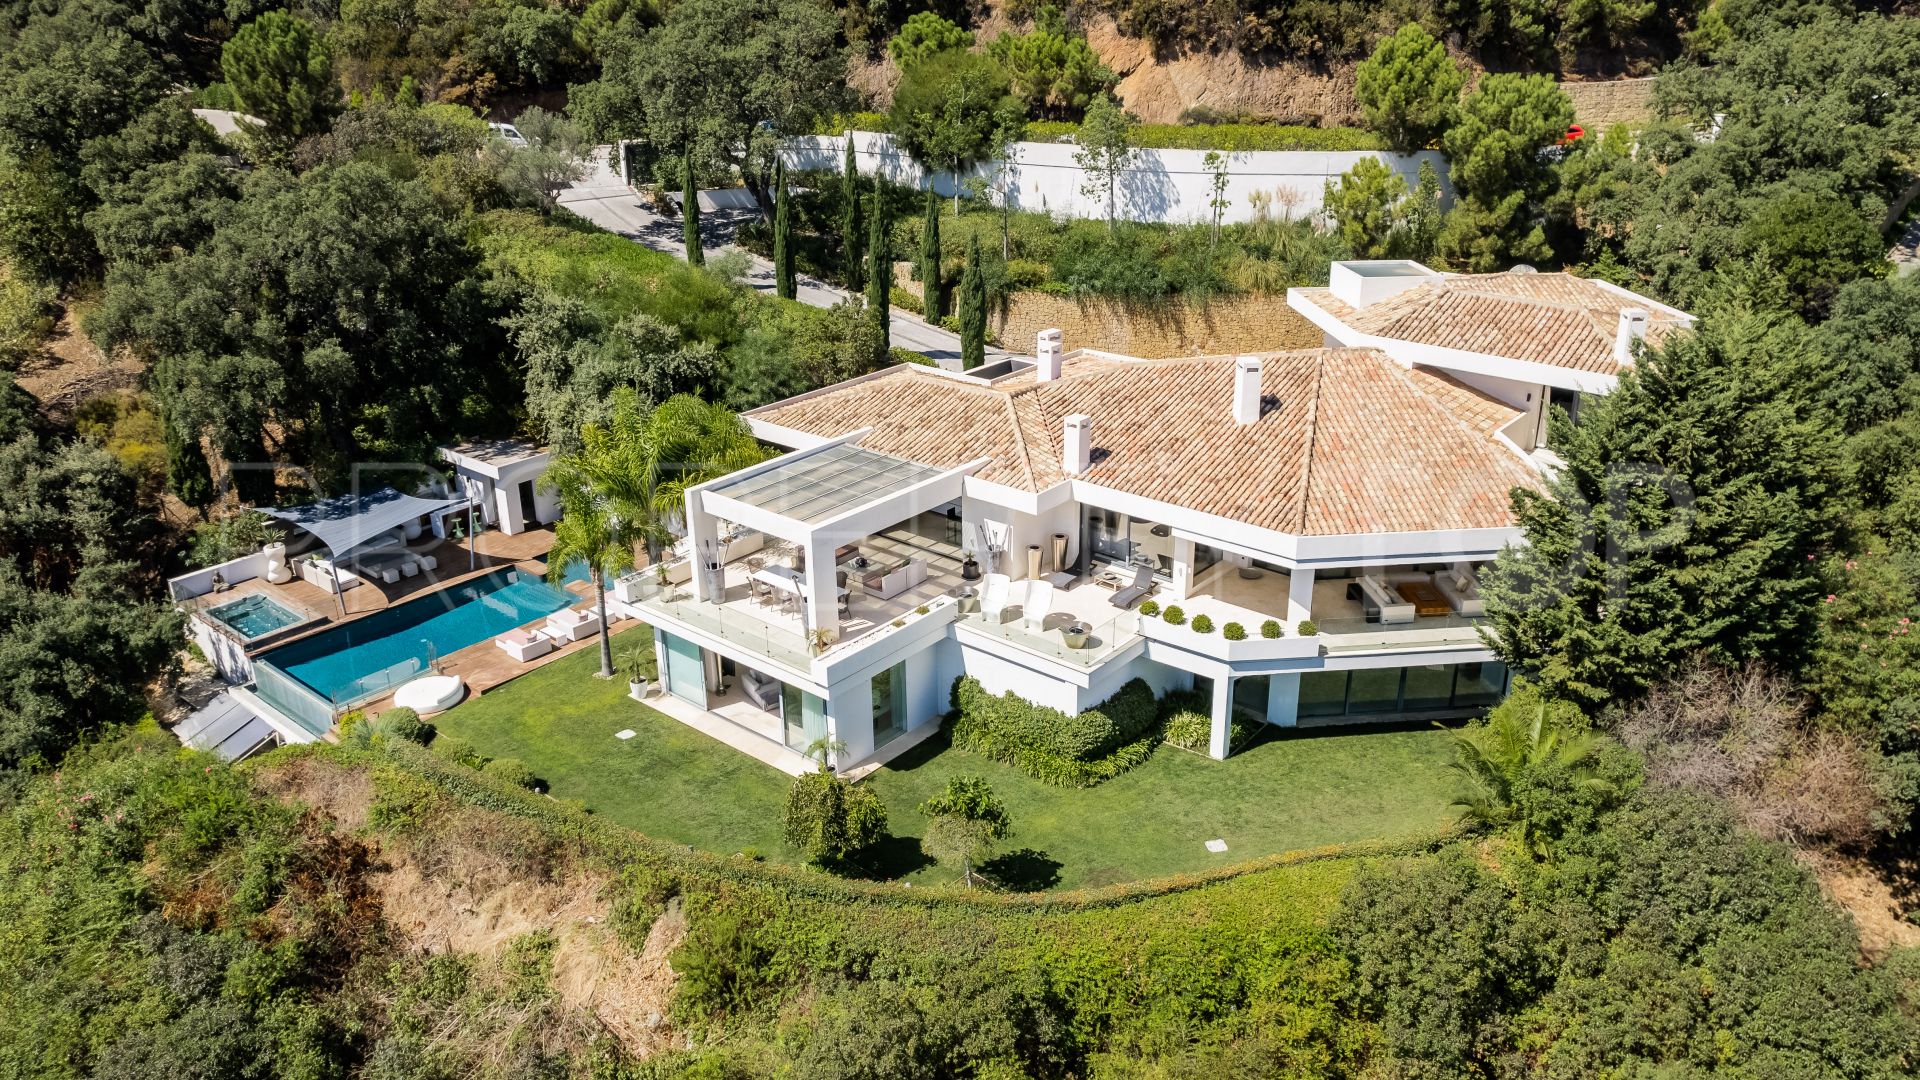 5 bedrooms villa in La Zagaleta for sale